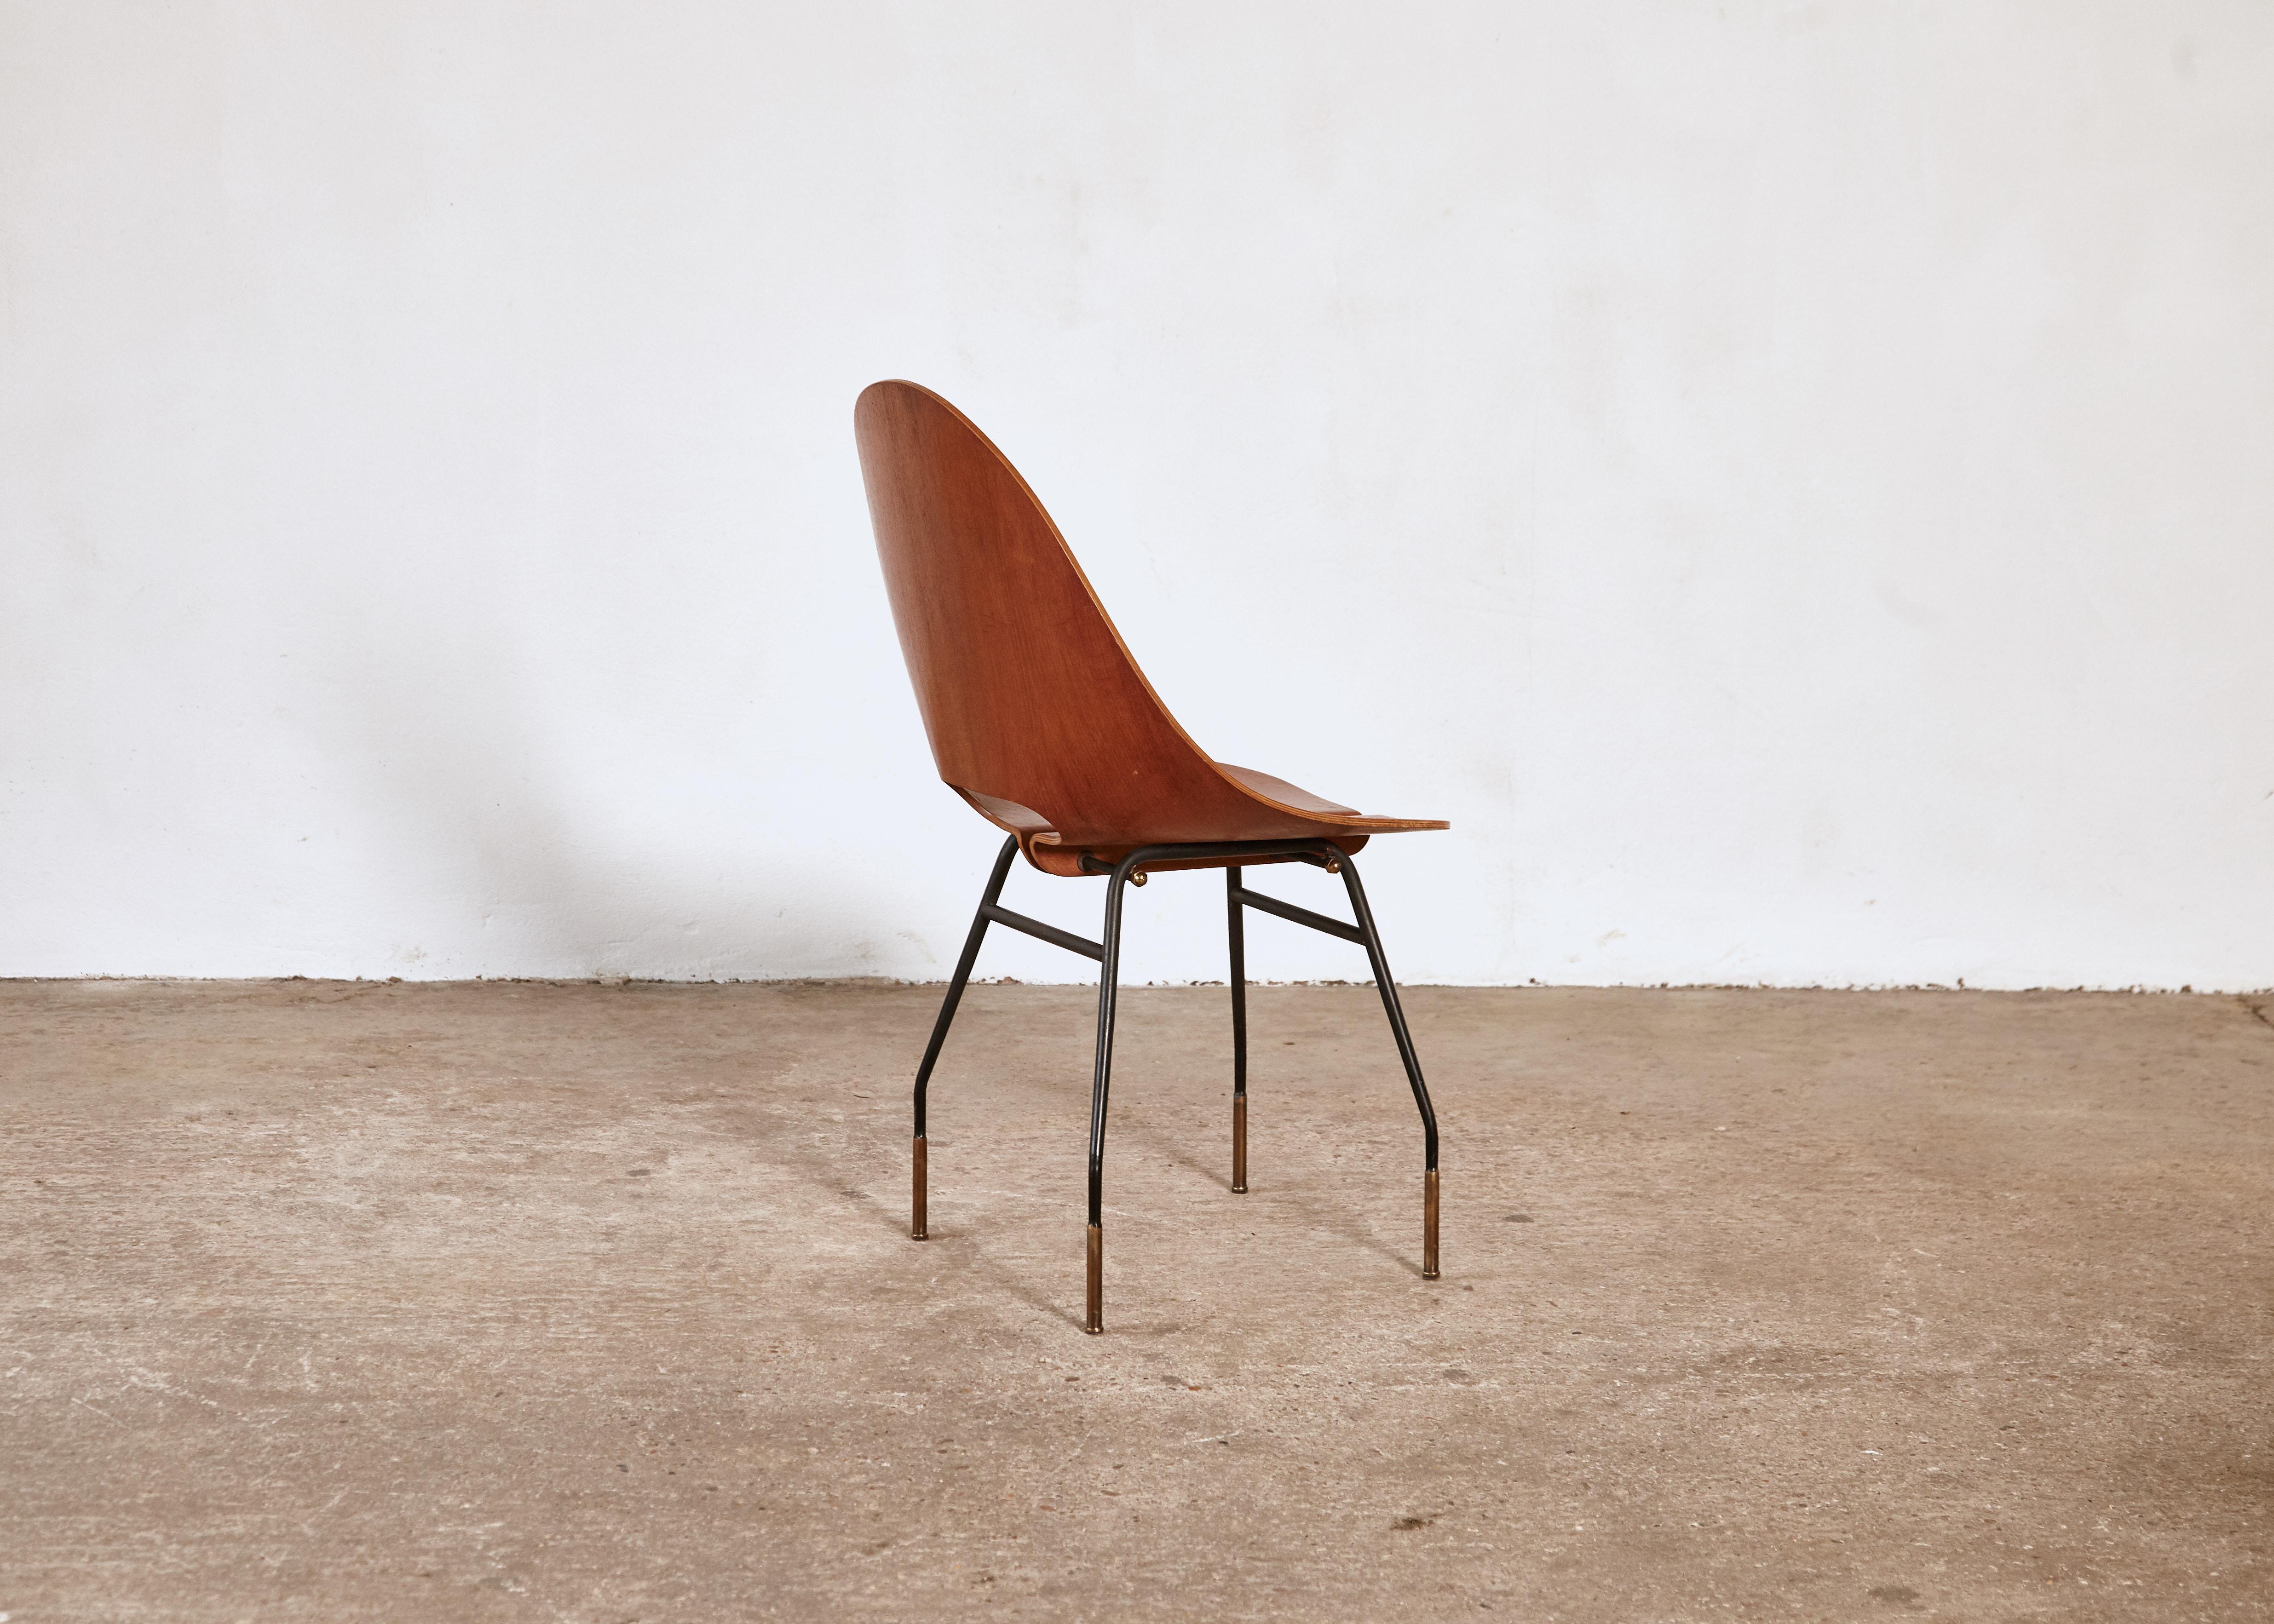 Iron Rare Societa Compensati Curvati Chair, Italy, 1950s For Sale